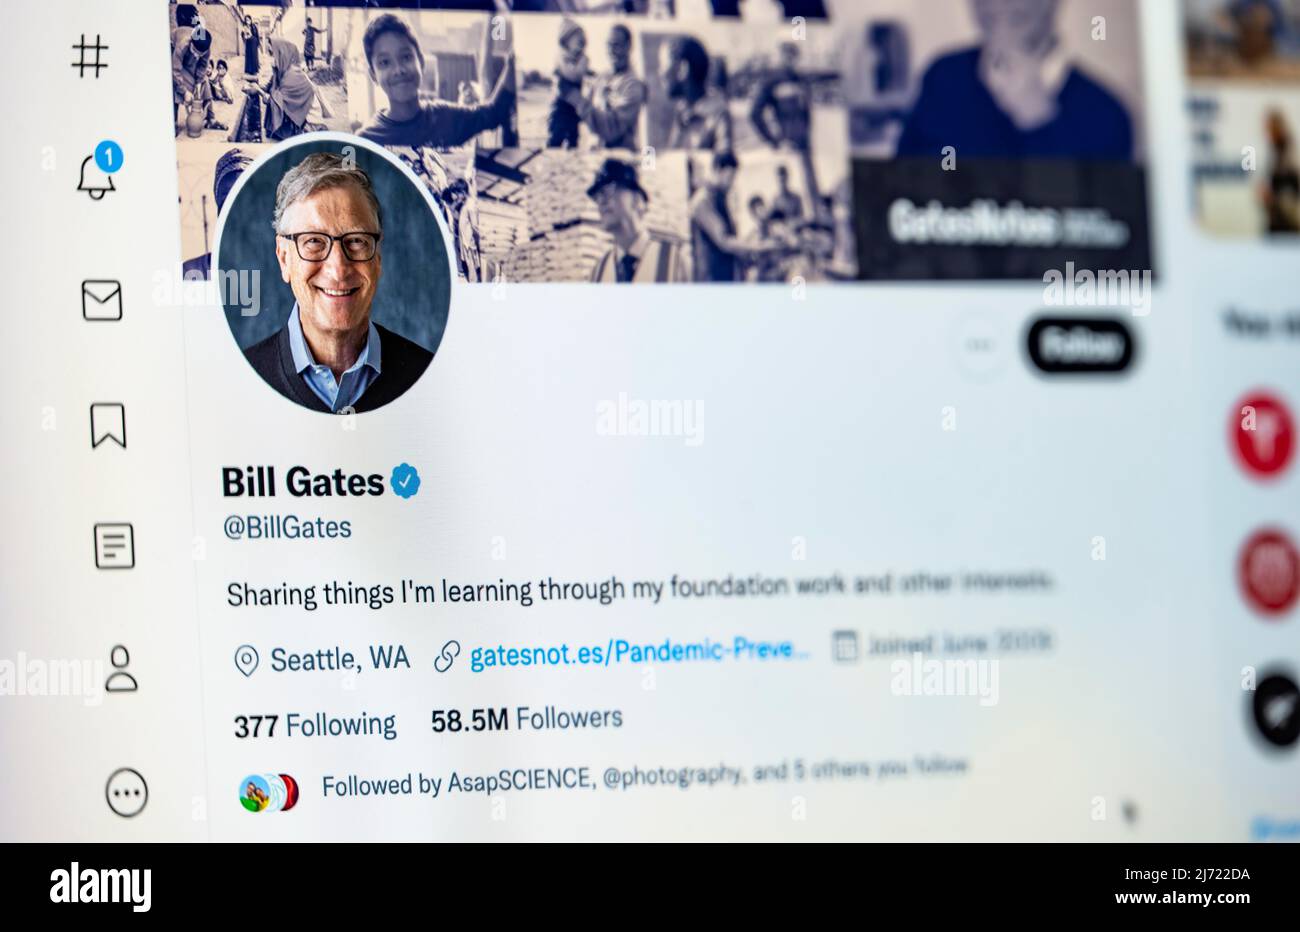 Twitter Seite des Unternehmers Bill Gates, Twitter, Soziales Netzwerk, Internet, Internetseite, Bildschirmfoto, dettaglio, Germania Foto Stock